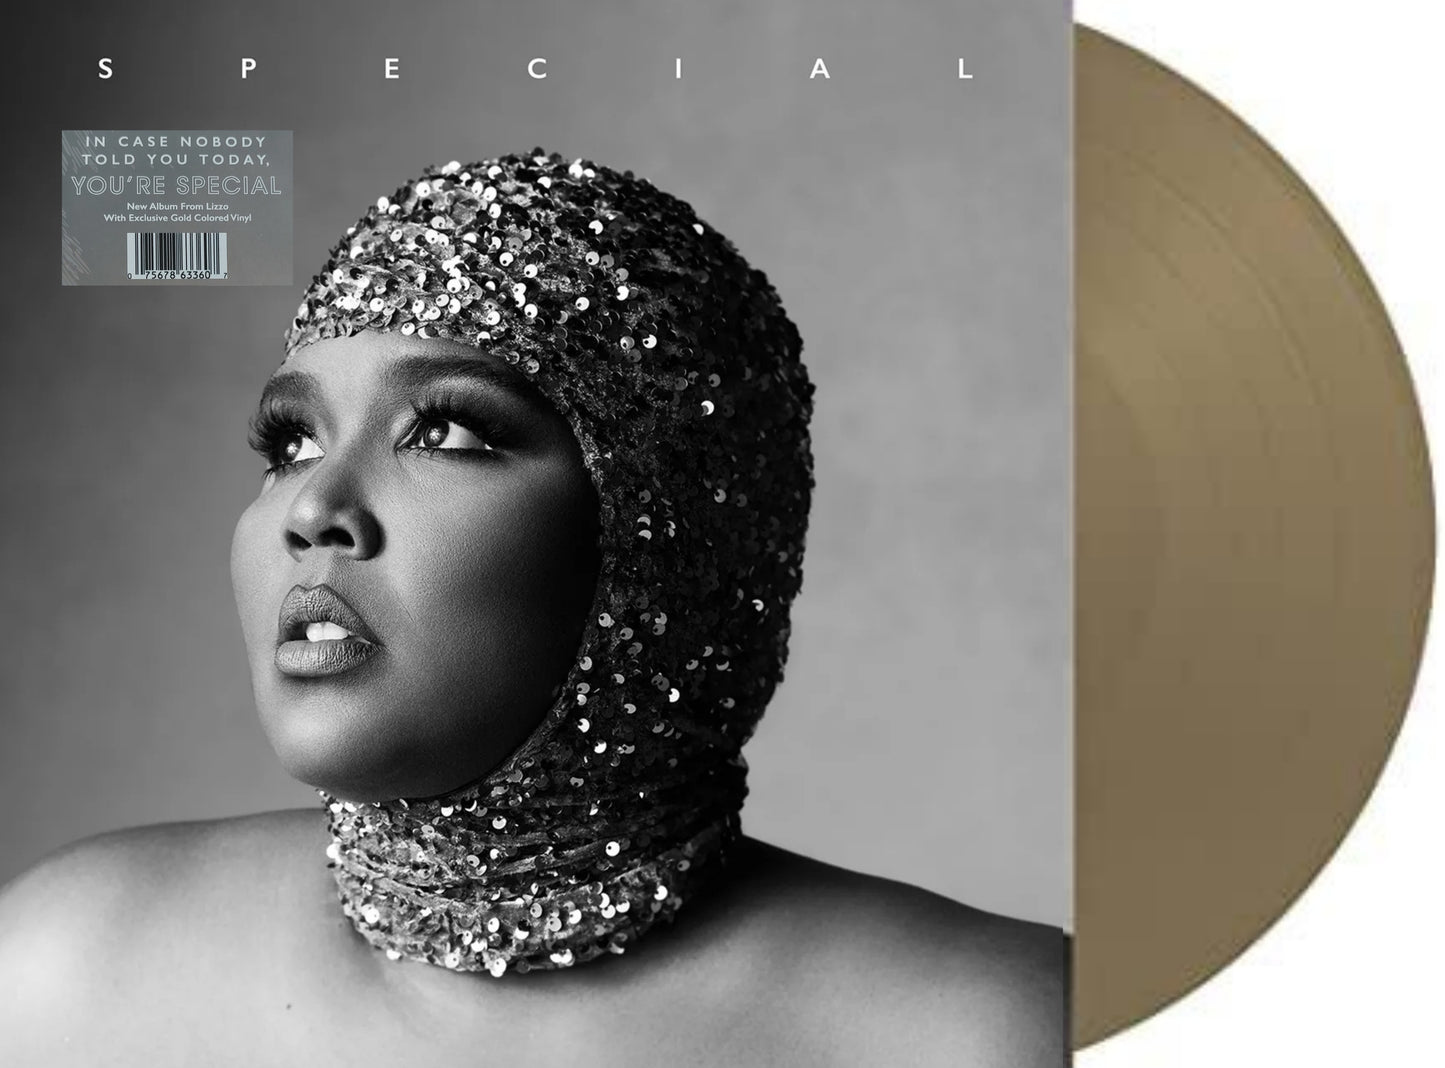 Lizzo: Special - Gold Vinyl LP - Vinyle doré exclusif en édition limitée